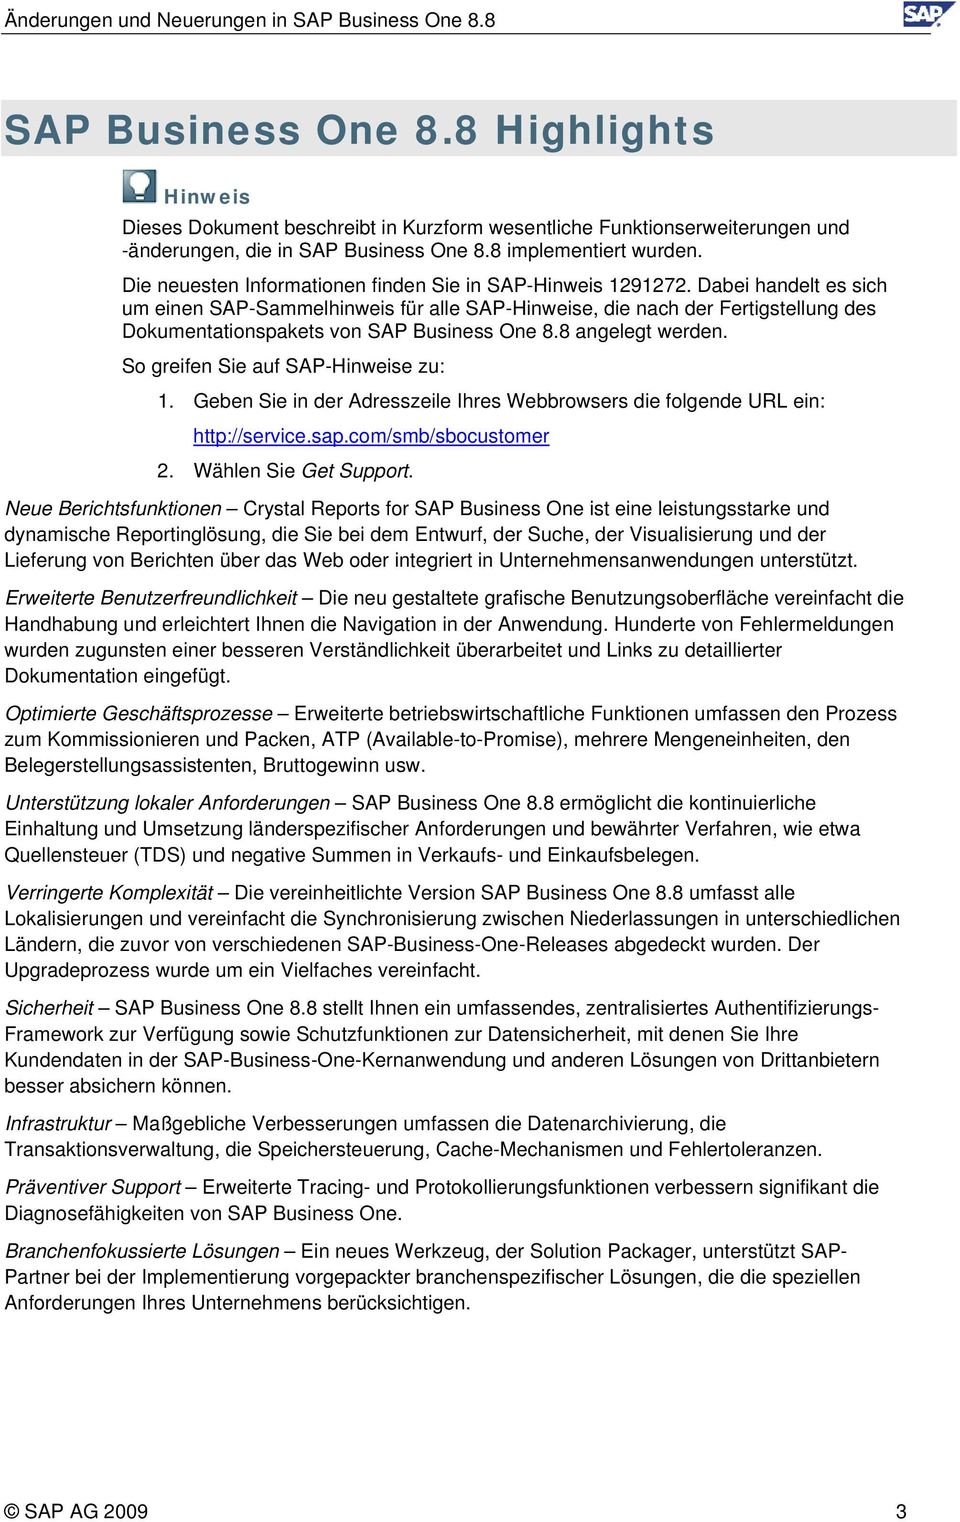 Dabei handelt es sich um einen SAP-Sammelhinweis für alle SAP-Hinweise, die nach der Fertigstellung des Dokumentationspakets von SAP Business One 8.8 angelegt werden.